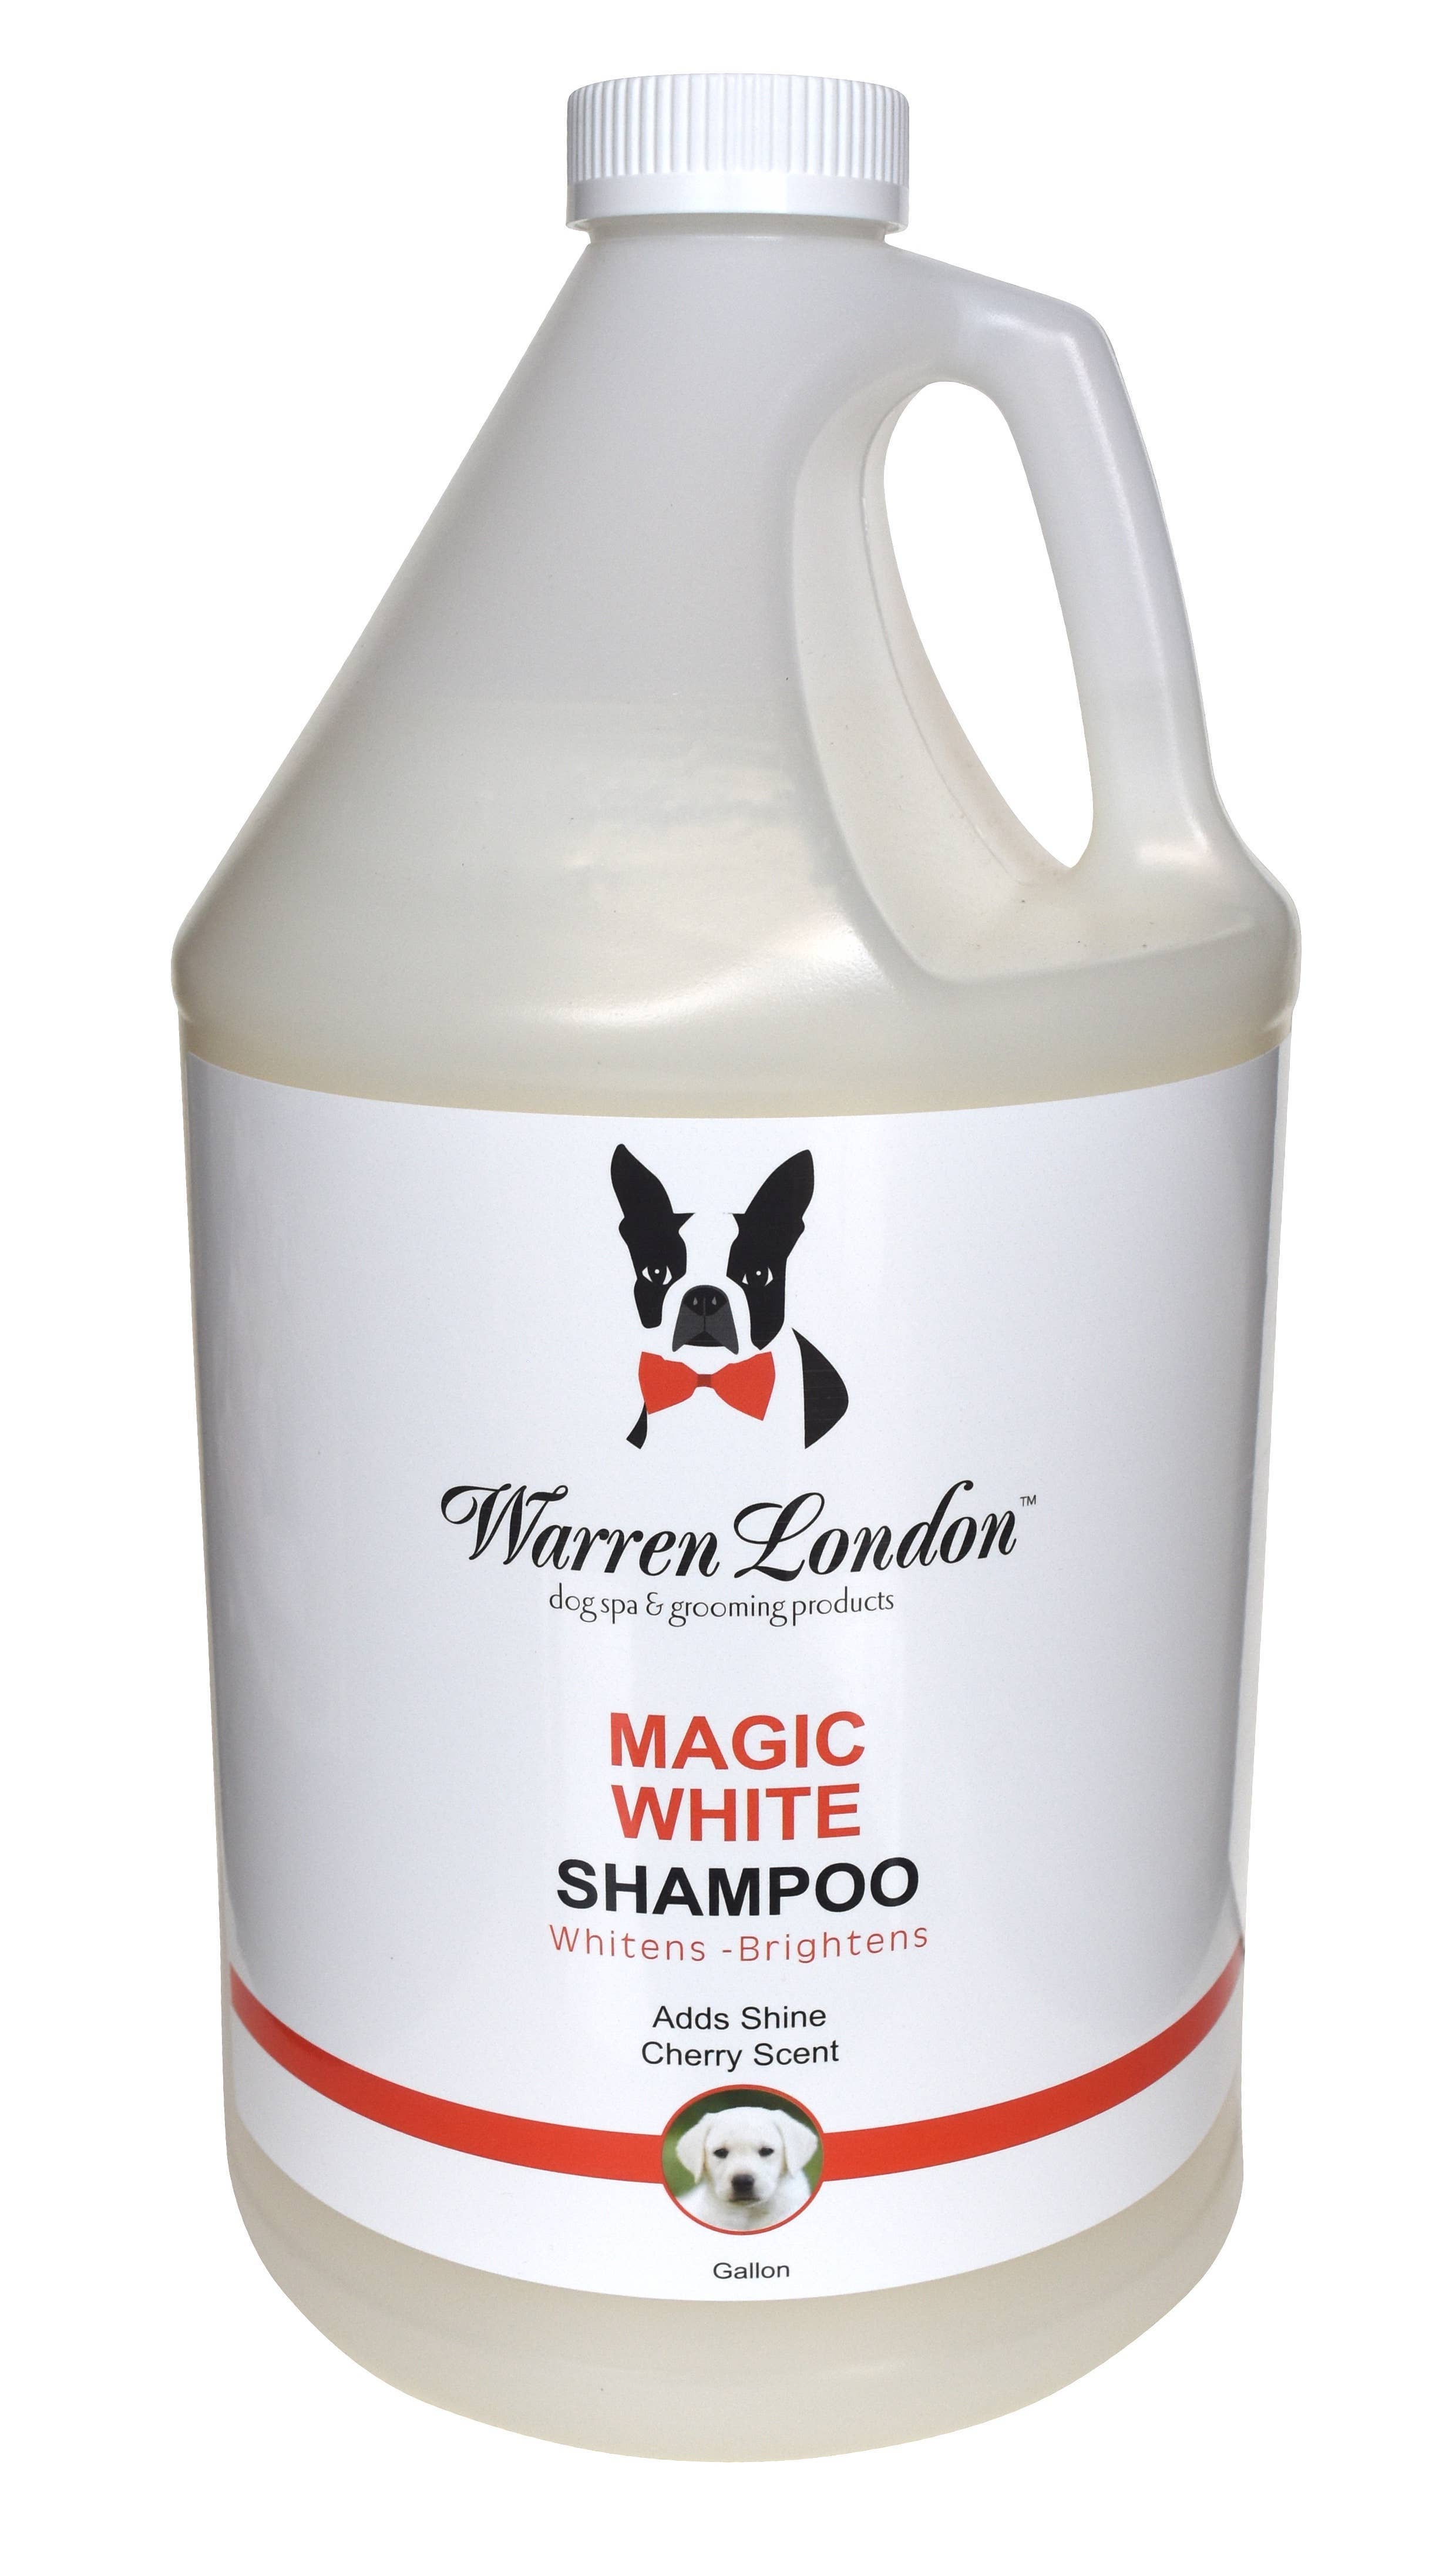 Warren London Dog Products - Shampoo: Magic White - 2 Sizes